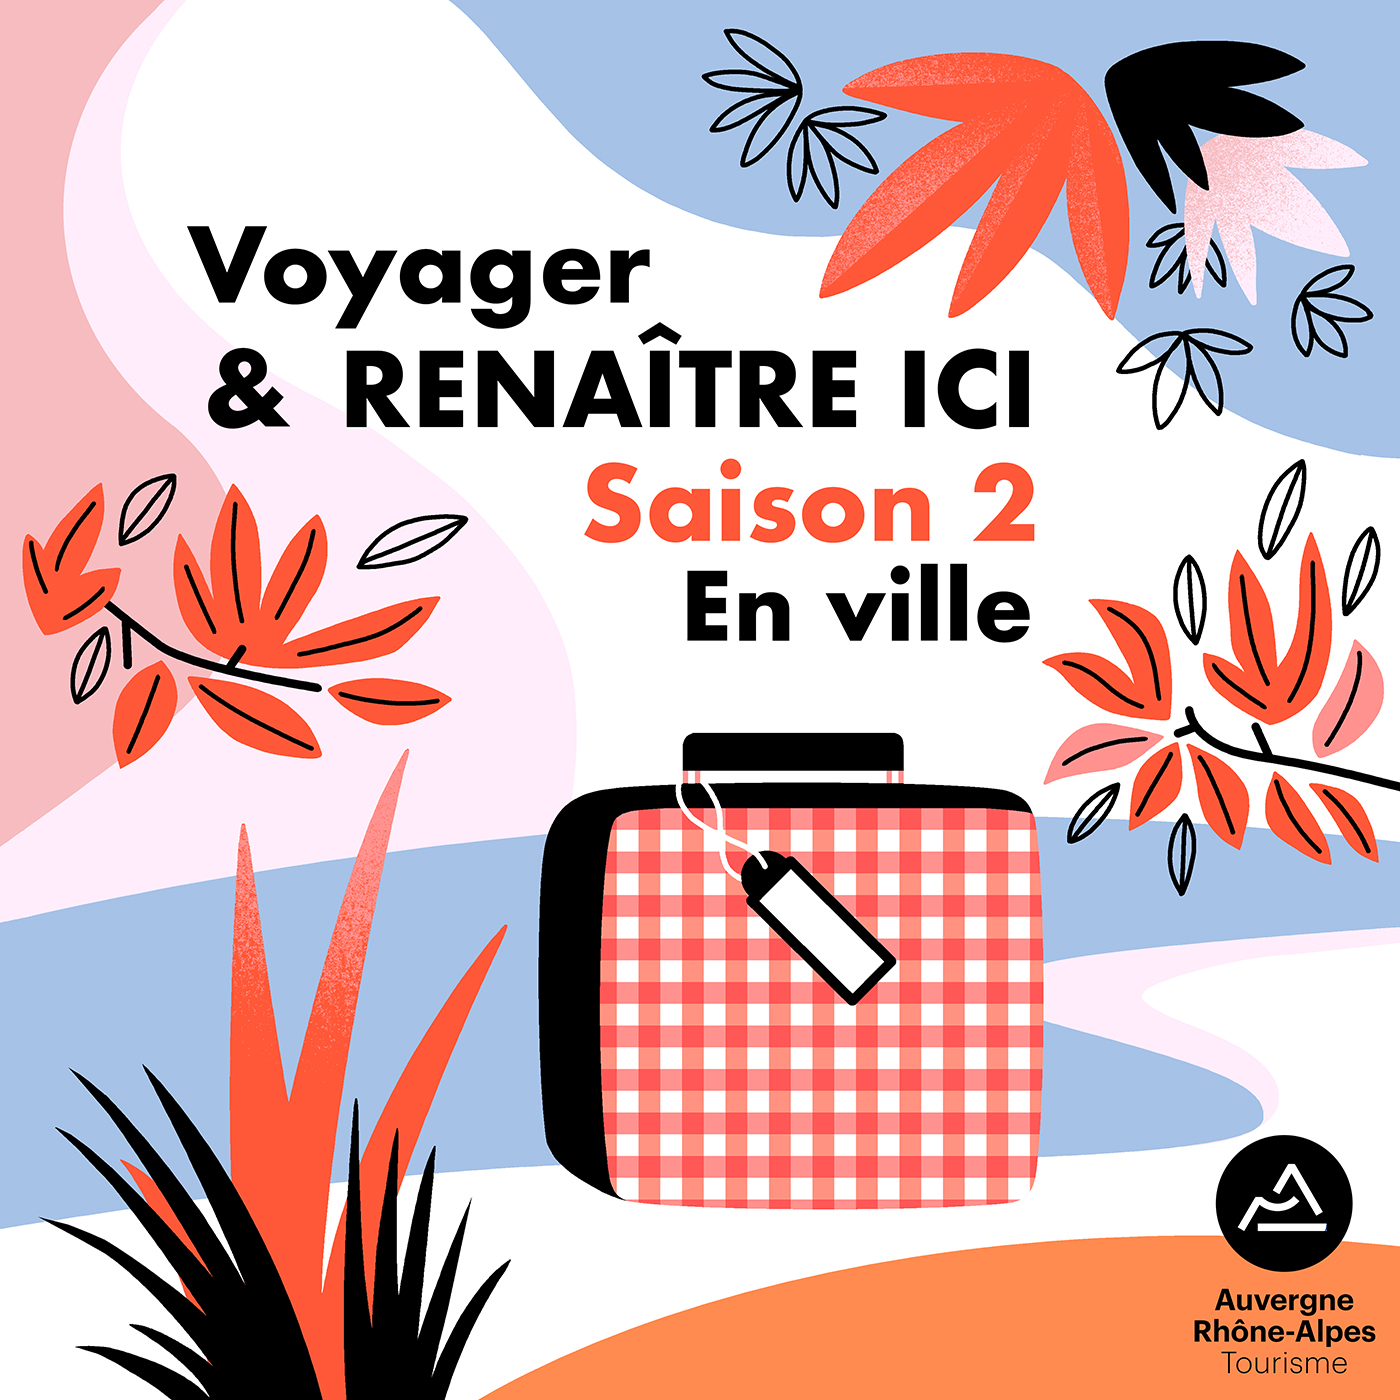 Clod illustration Podcast Renaitre Ici saison 2 pour la Région Auvergne-Rhône-Alpes